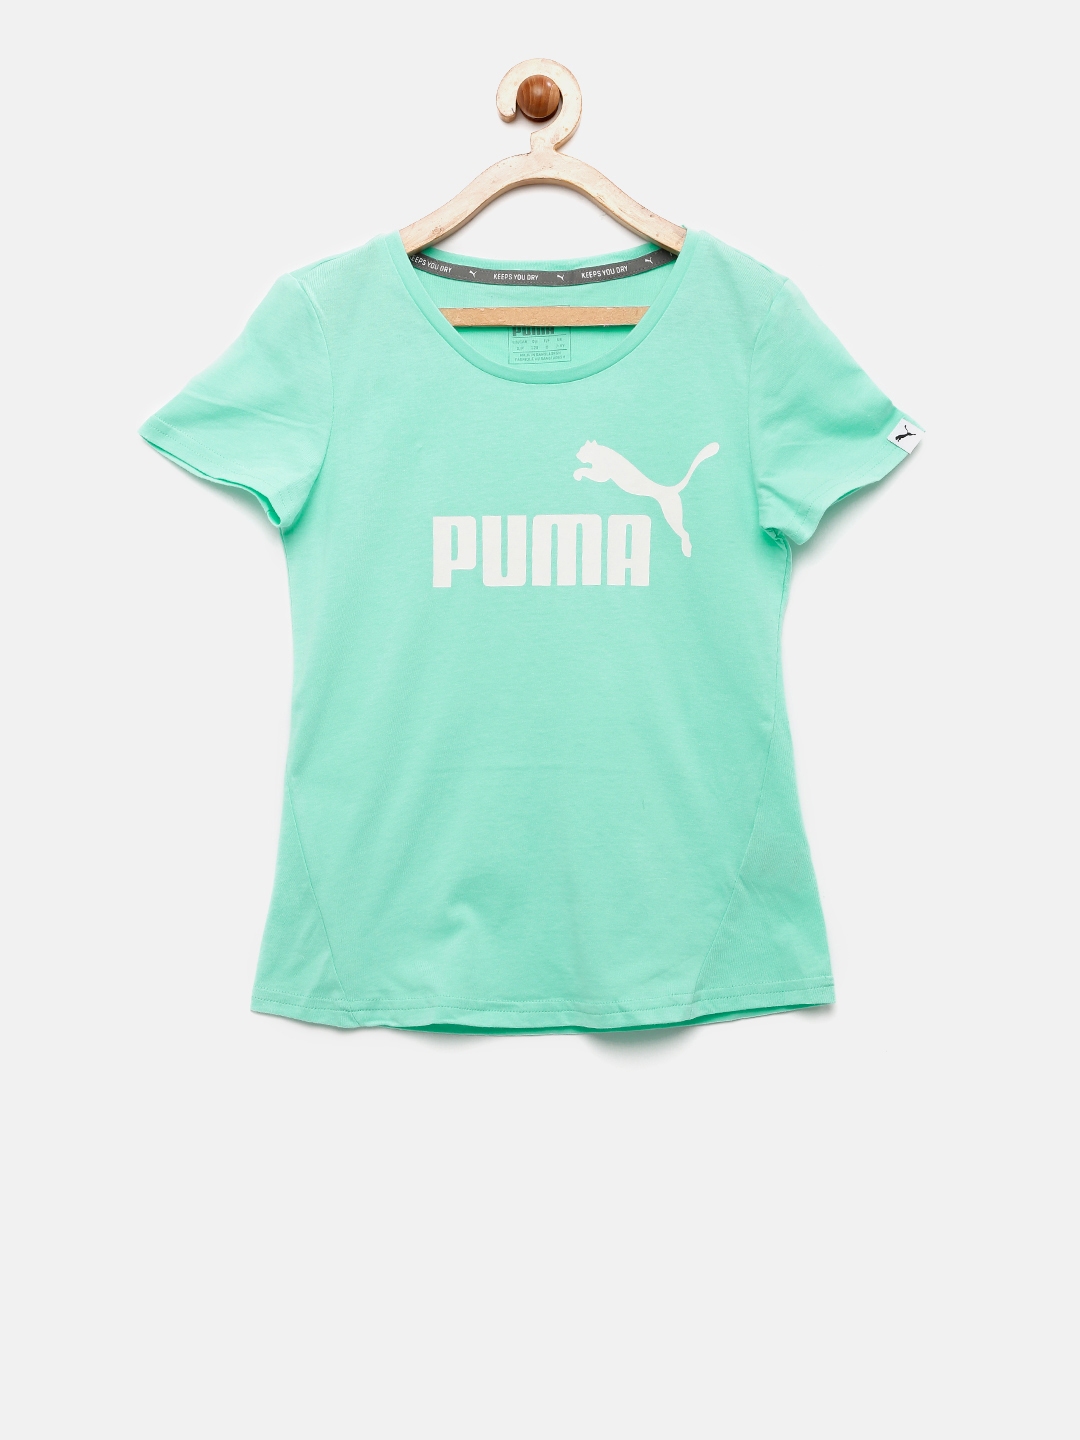 mint green puma shirt